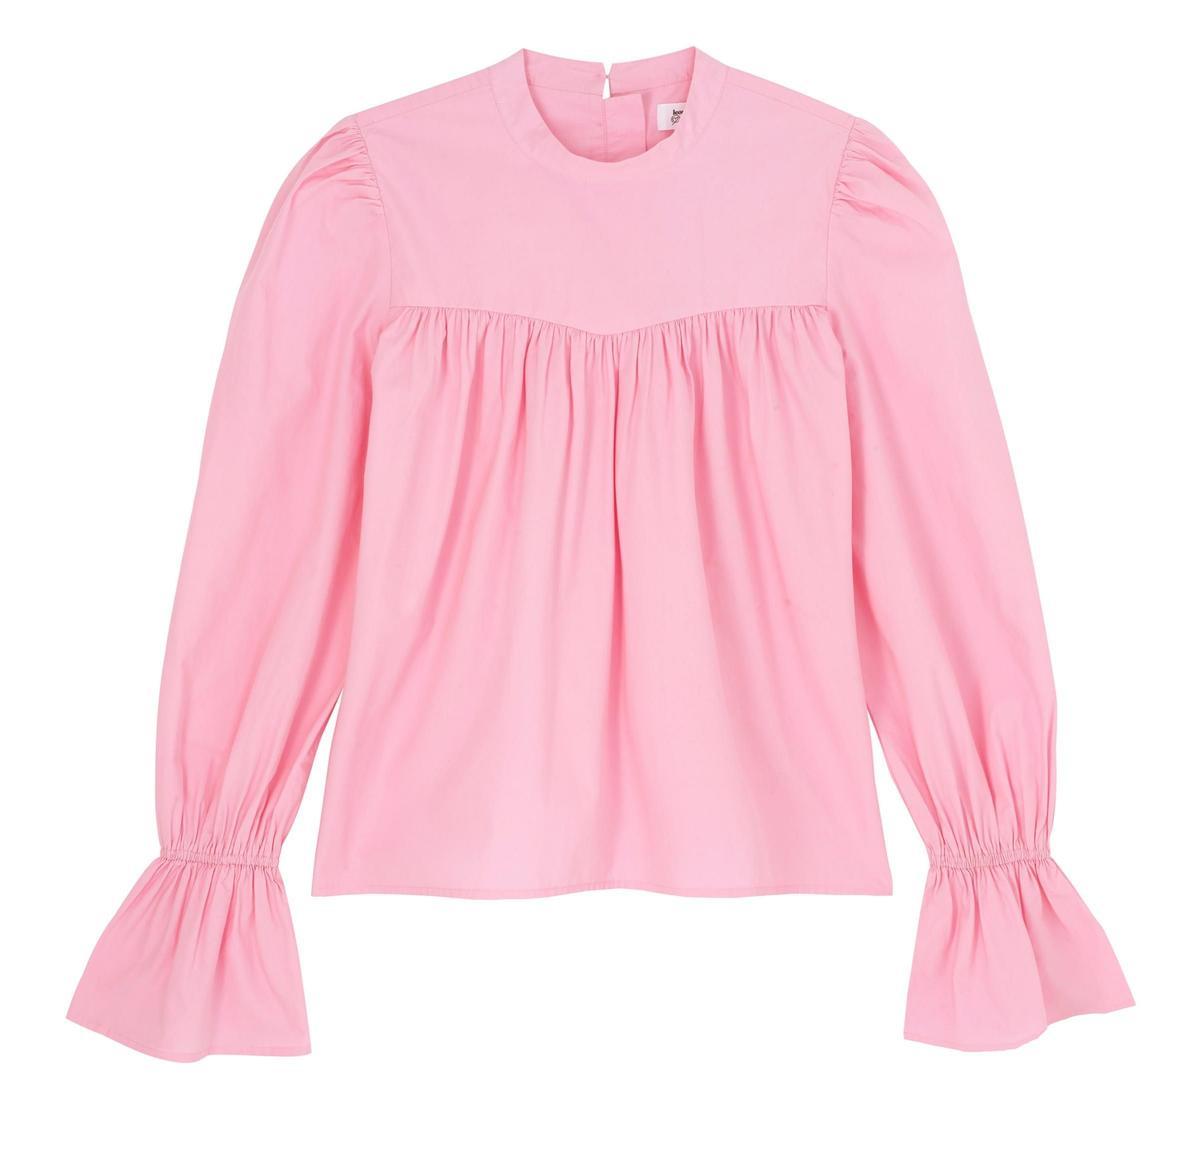 Blusa mangas abullonadas rosa de Leonie Hanne para The Drop (precio: 39,90€)